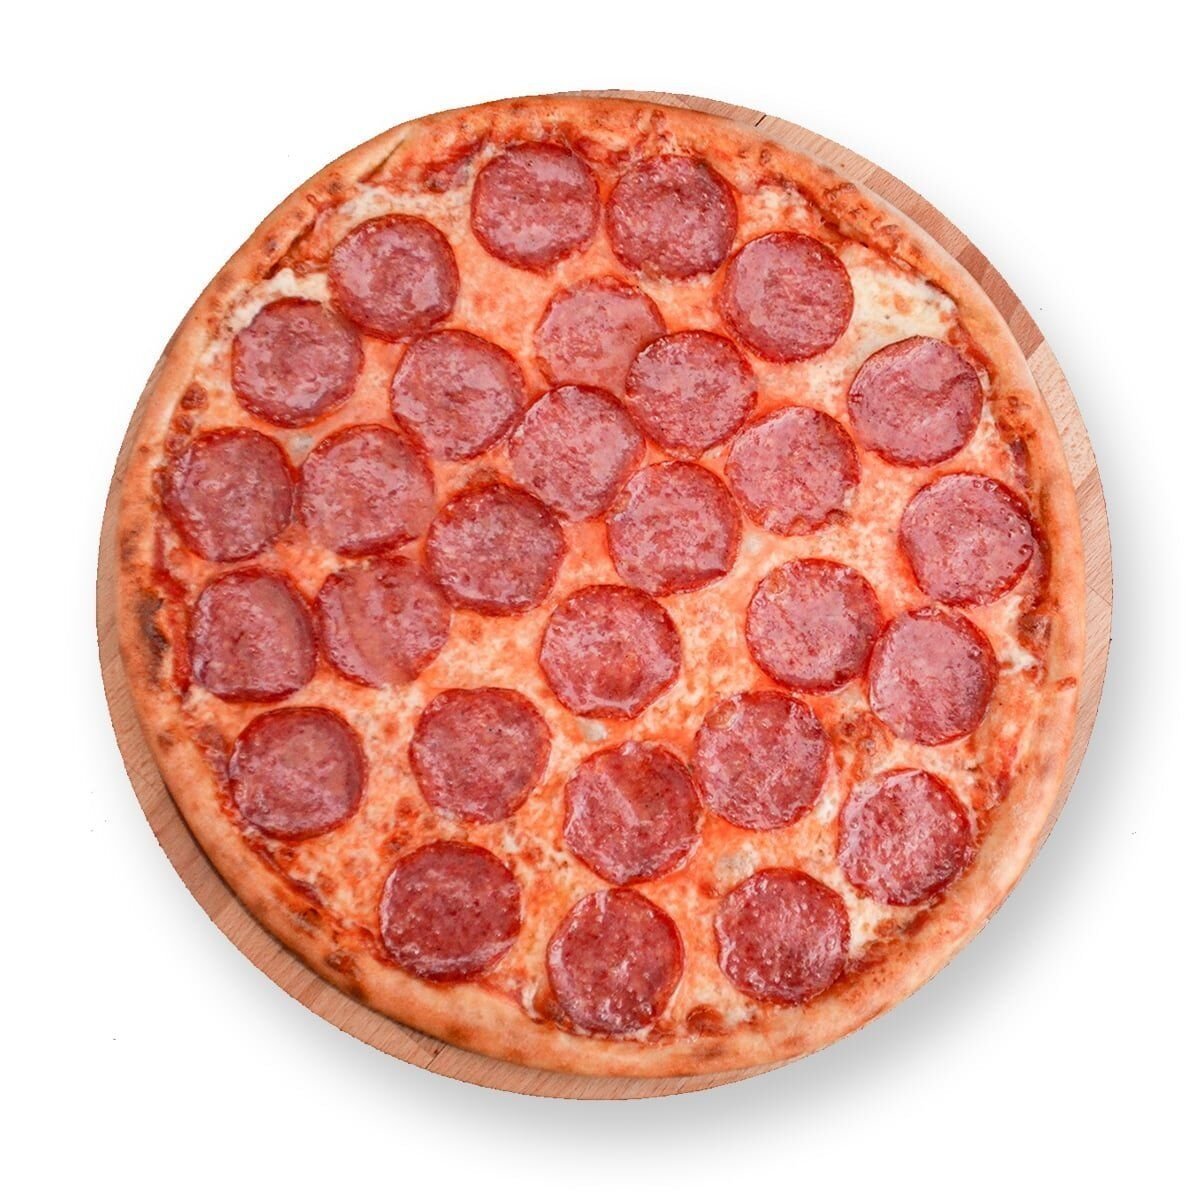 способ приготовления пиццы пепперони фото 59